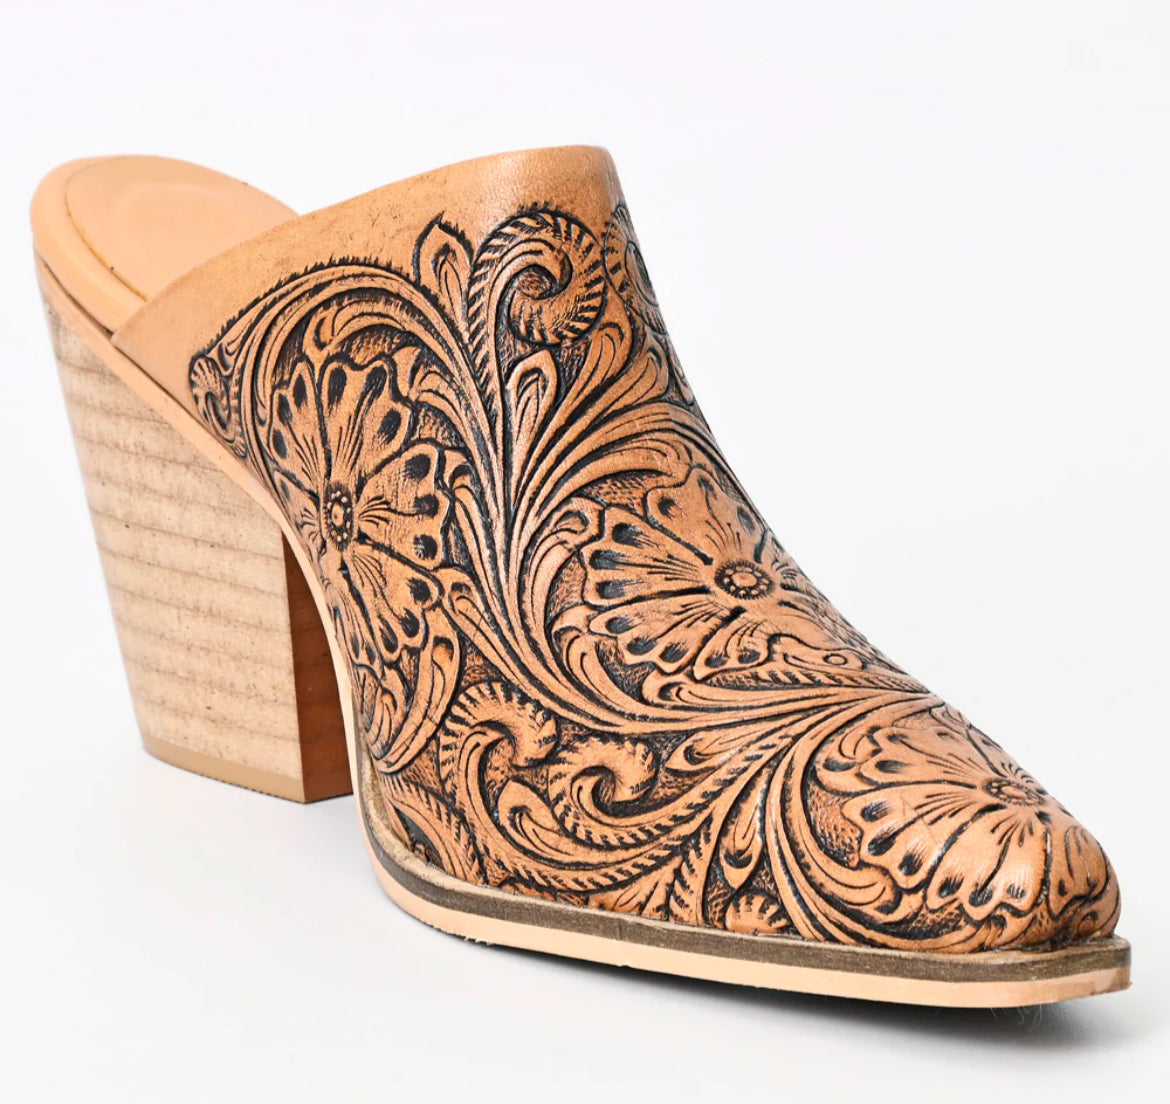 American Darling tooled genuine leather tooled heel booties